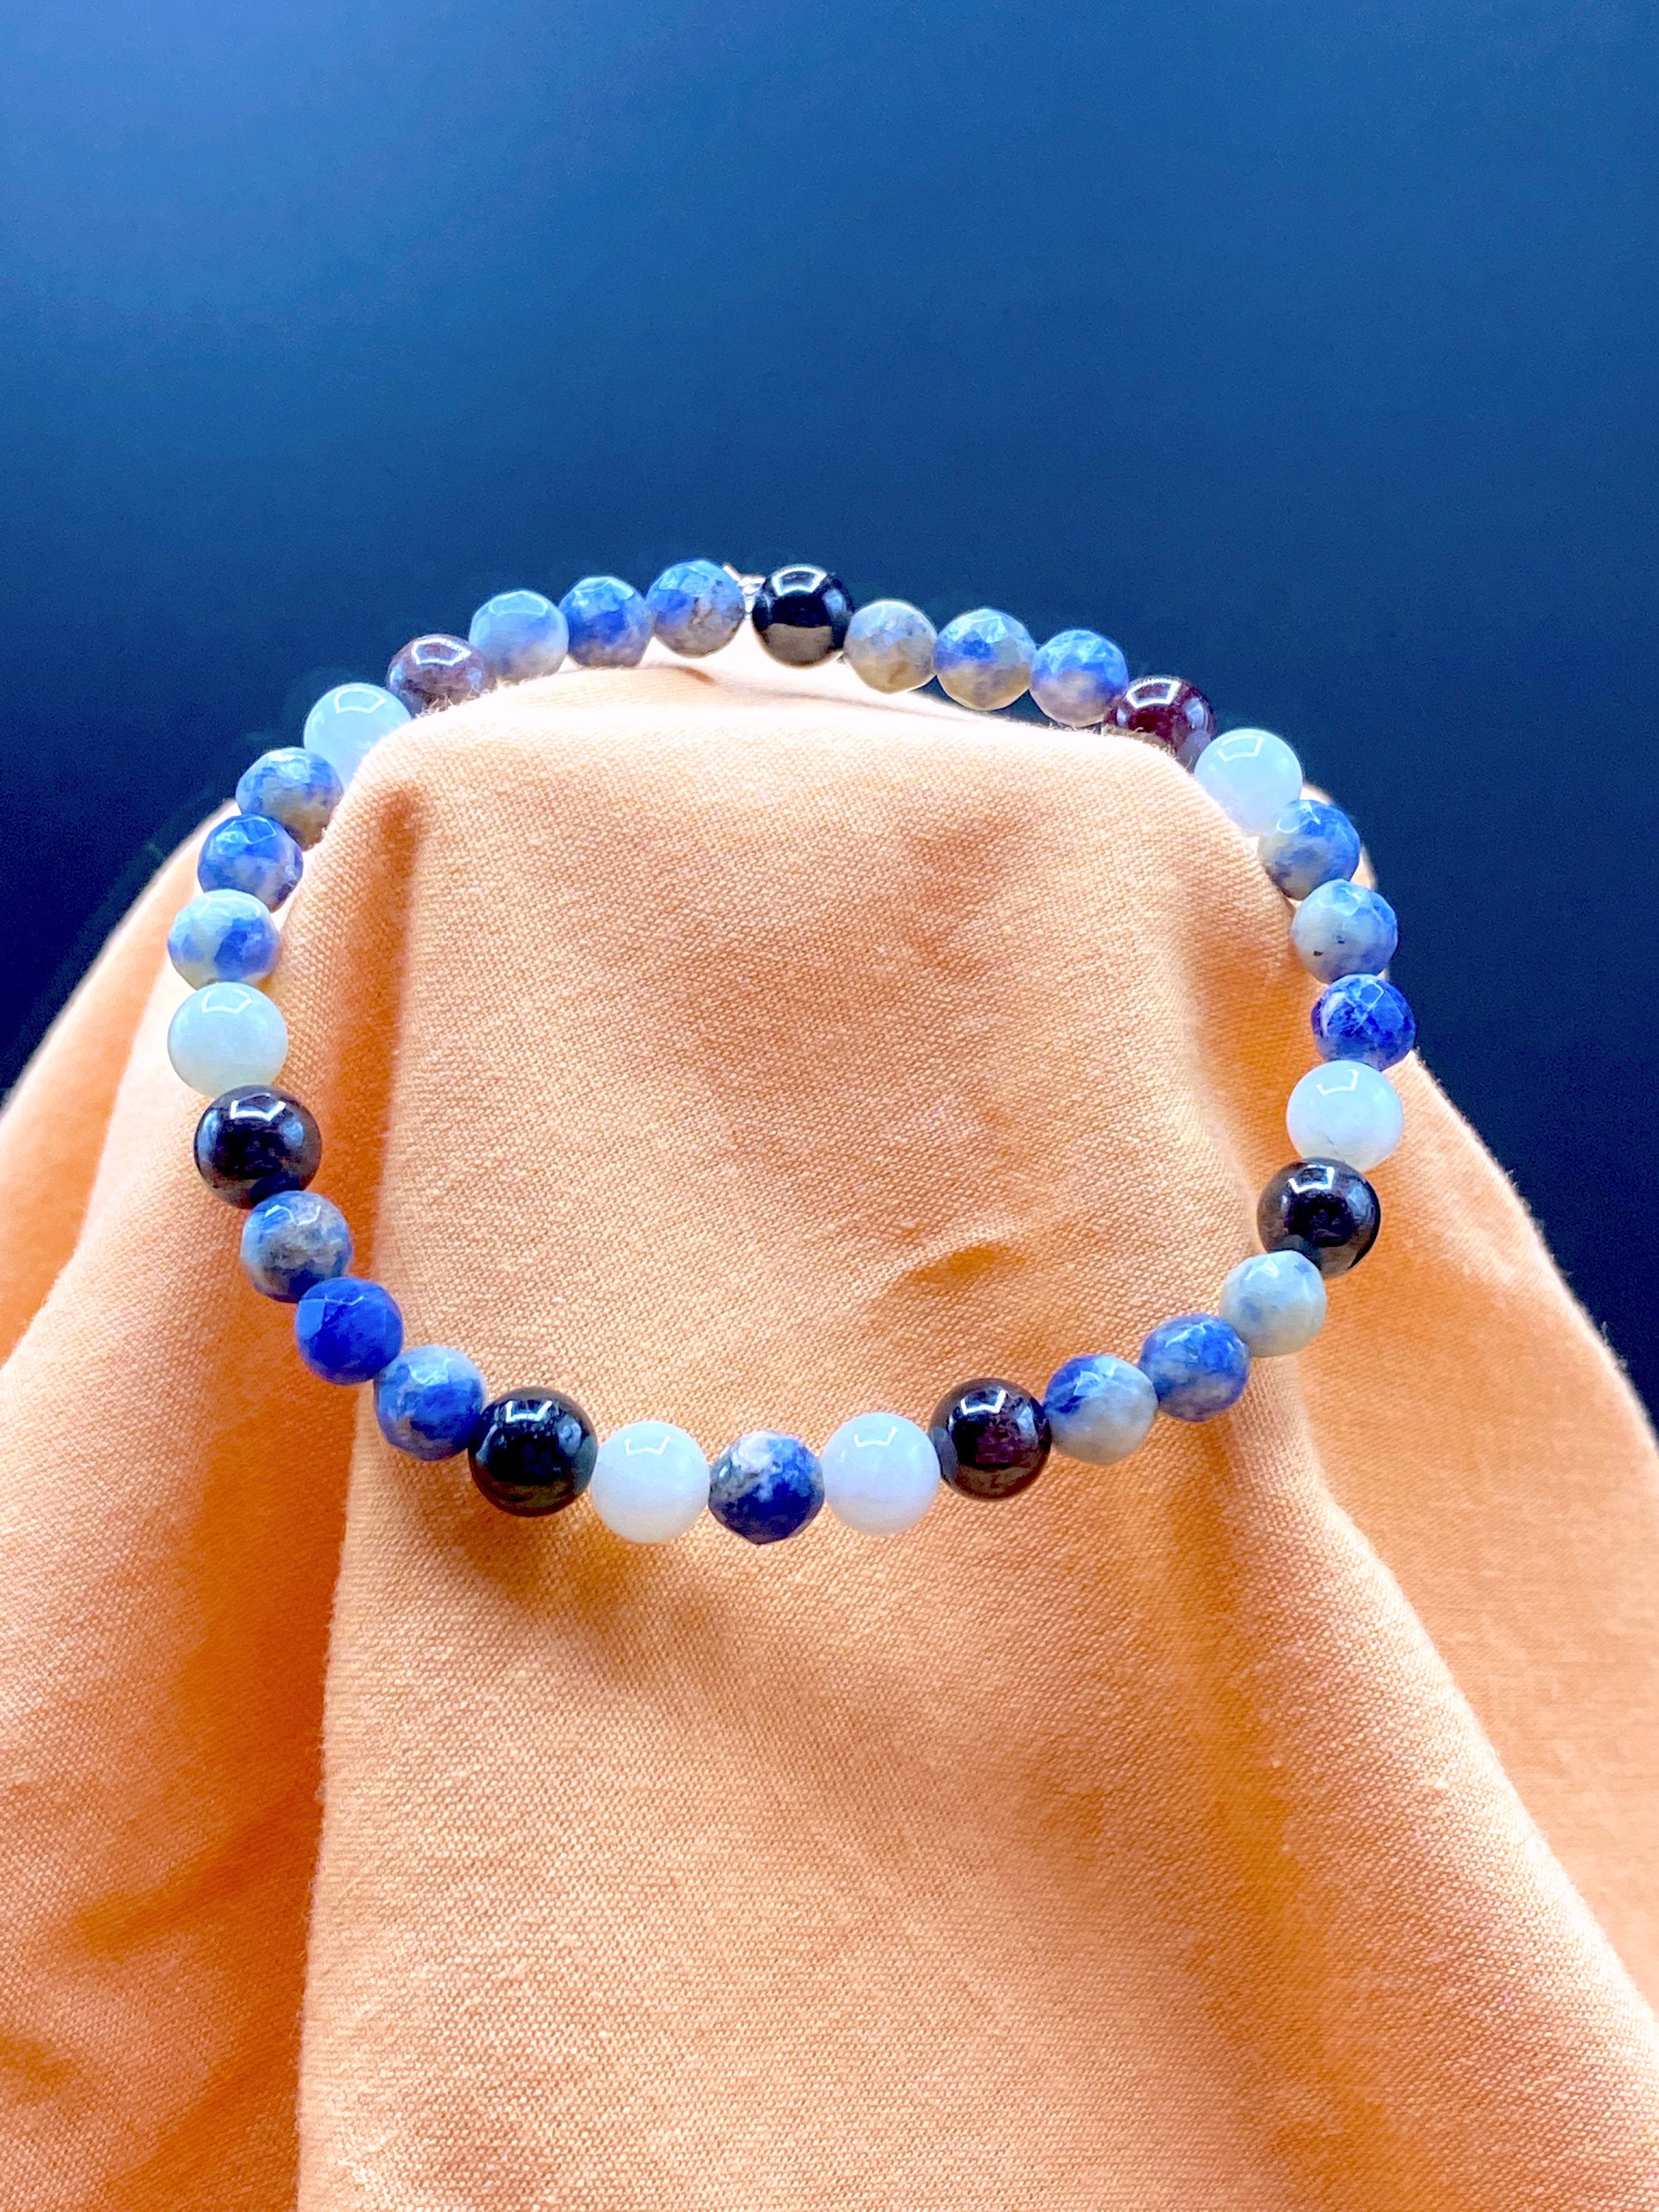 Crystal Healing Garnet Beryl Sodalite Stretch Bracelet - Mama’s Malas jewelry